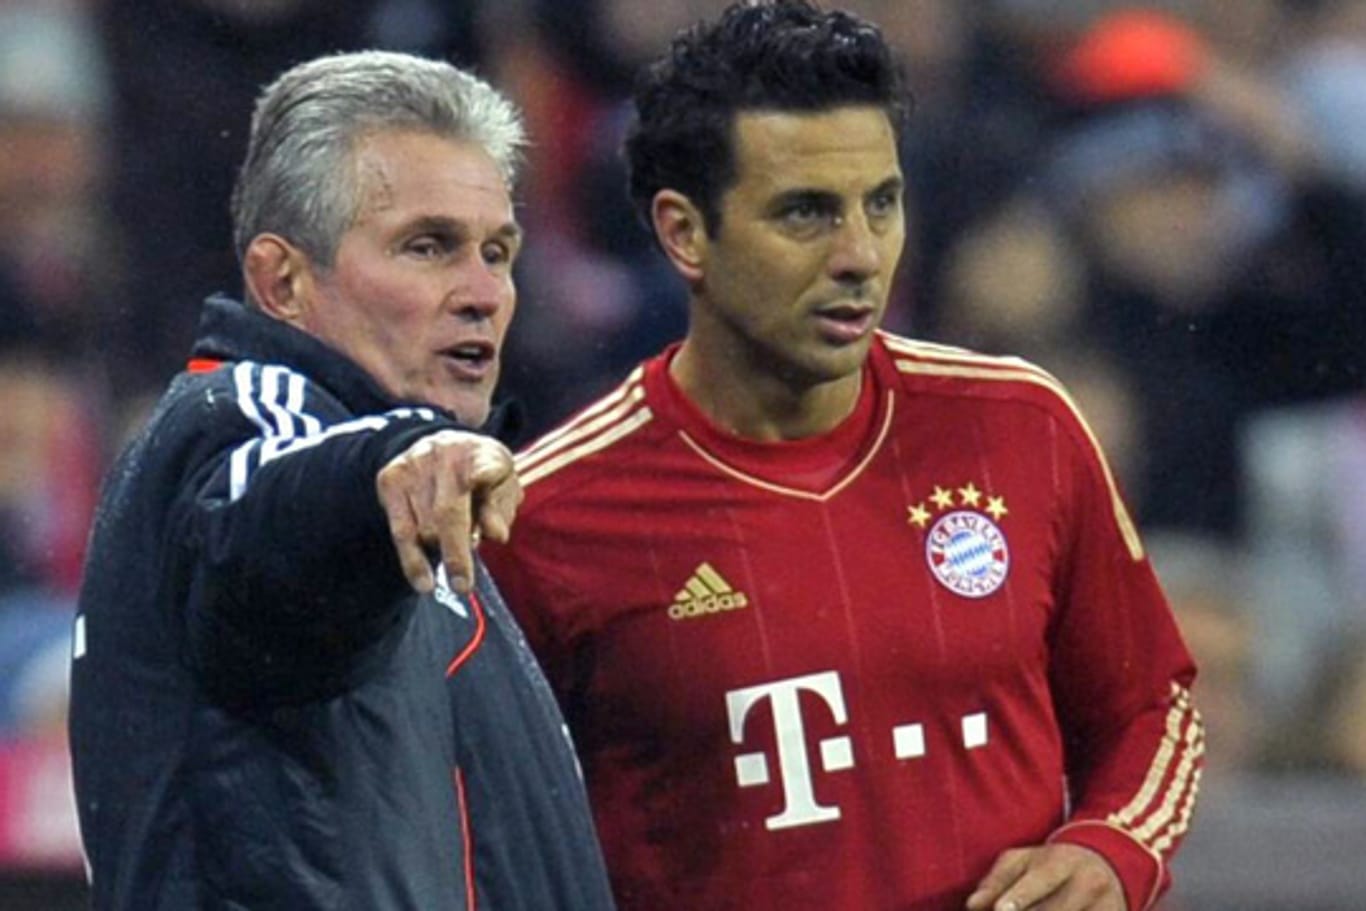 Bekommt Claudio Pizarro von Trainer Jupp Heynckes nach seinem Doppelpack im DFB-Pokal jetzt mehr Einsatzzeit beim FC Bayern?